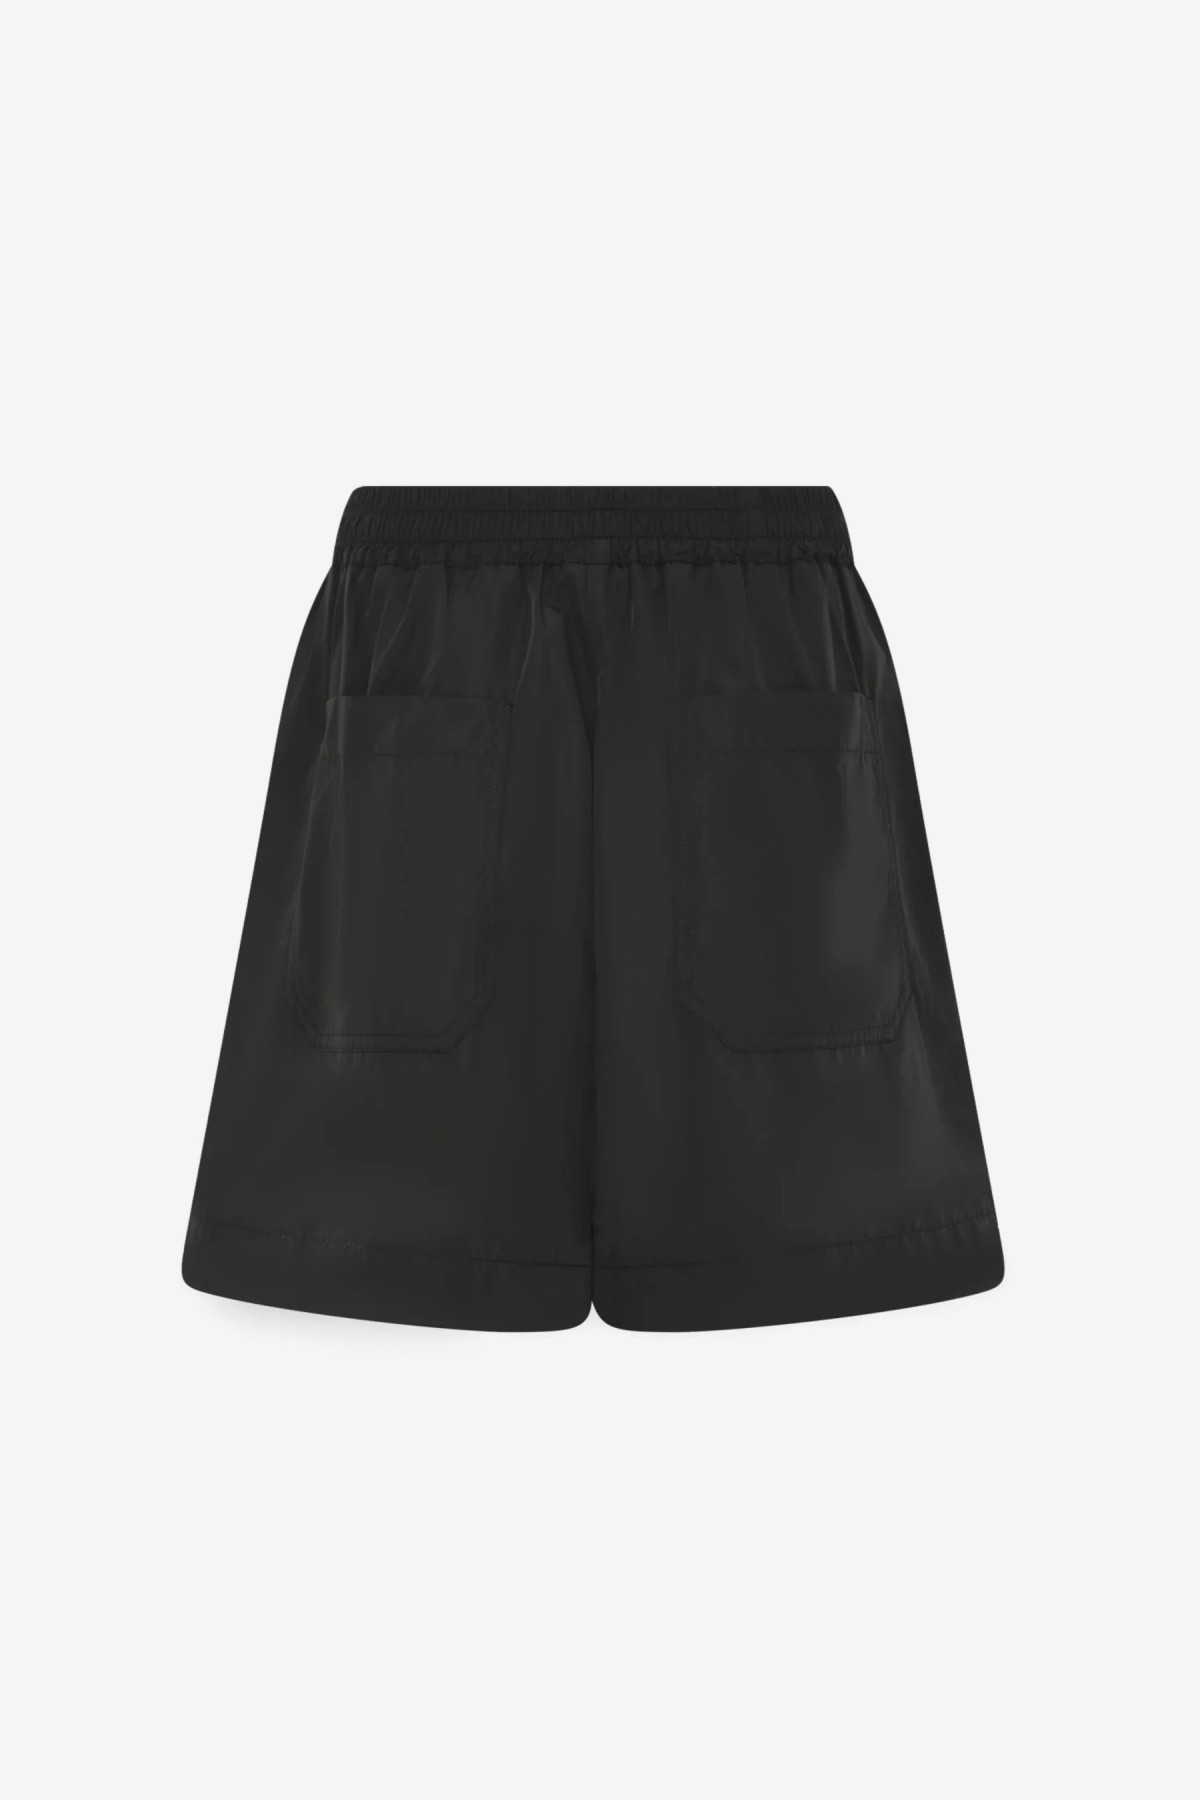 Herskind Alma Shorts in Black